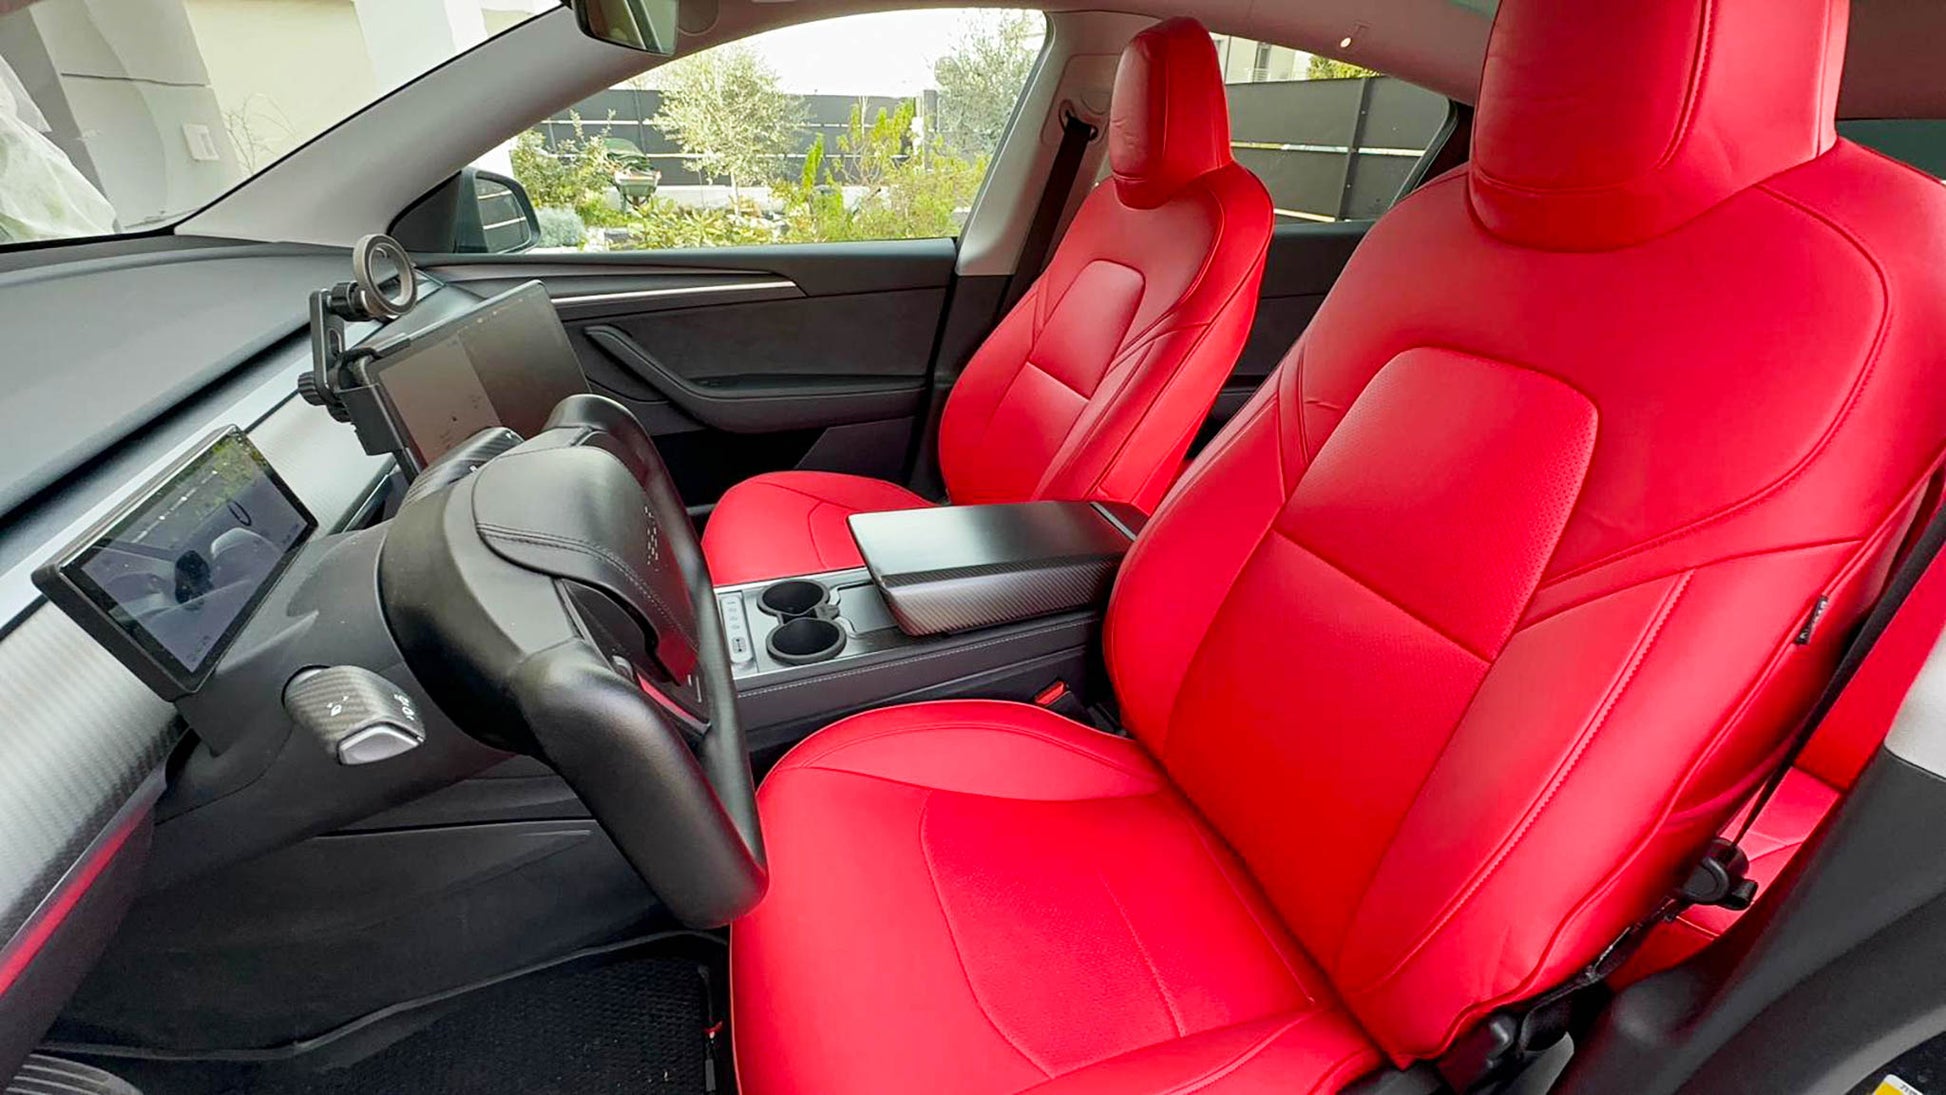 VOIV 1 Stück Auto Sitzkissen für Tesla Model 3/Fastback Model 3/Model S  Liftback, Atmungsaktiv Bequem Sitzauflage für Autositz, Bürostuhl und Alle